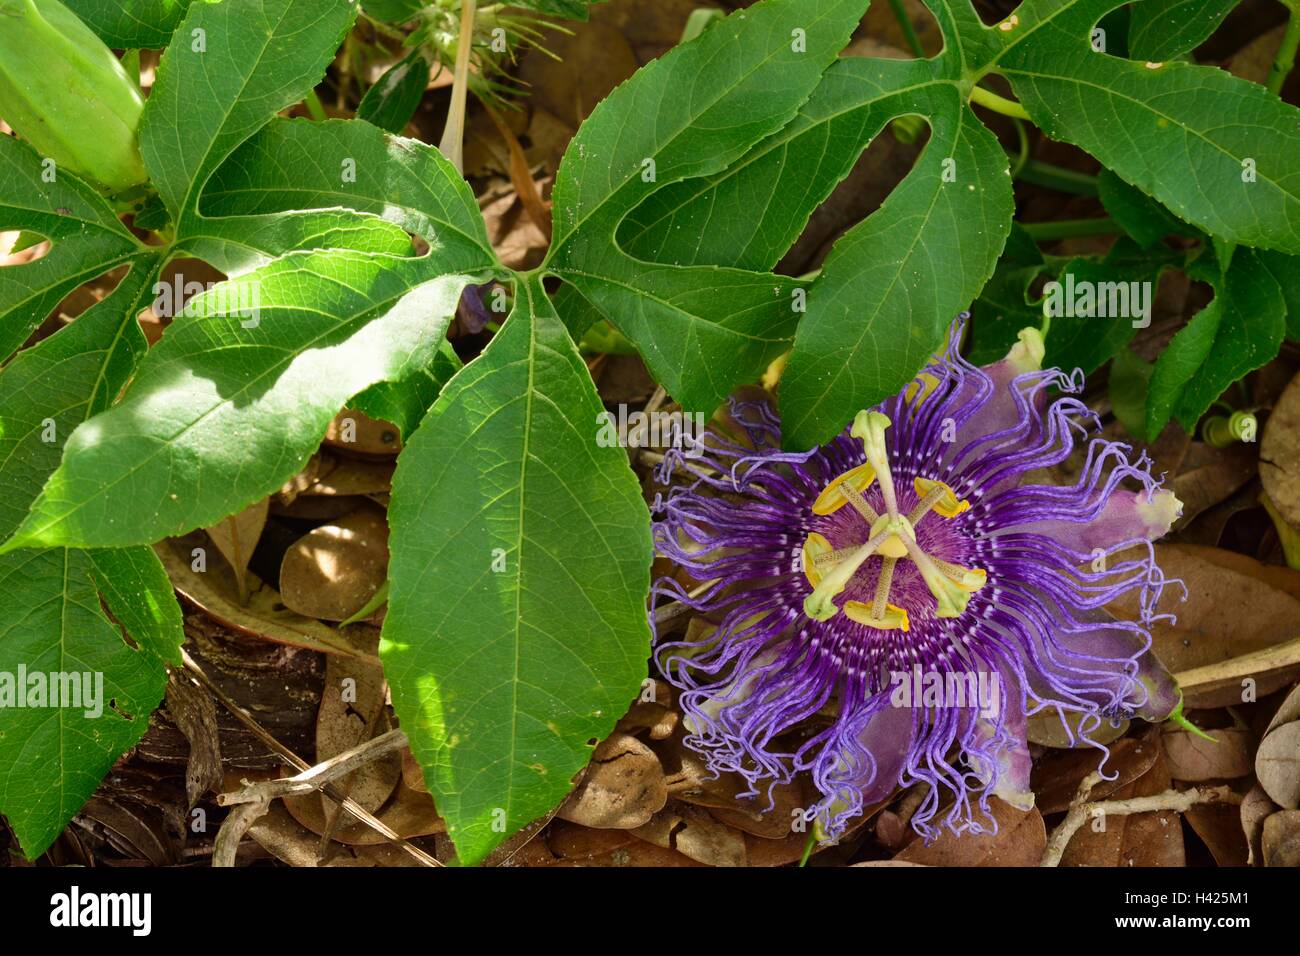 Wunderschöne offene Passiflora incarnata oder Purple Passion Flower allgemein bekannt als maypop, in einem botanischen Garten in Florida. Stockfoto